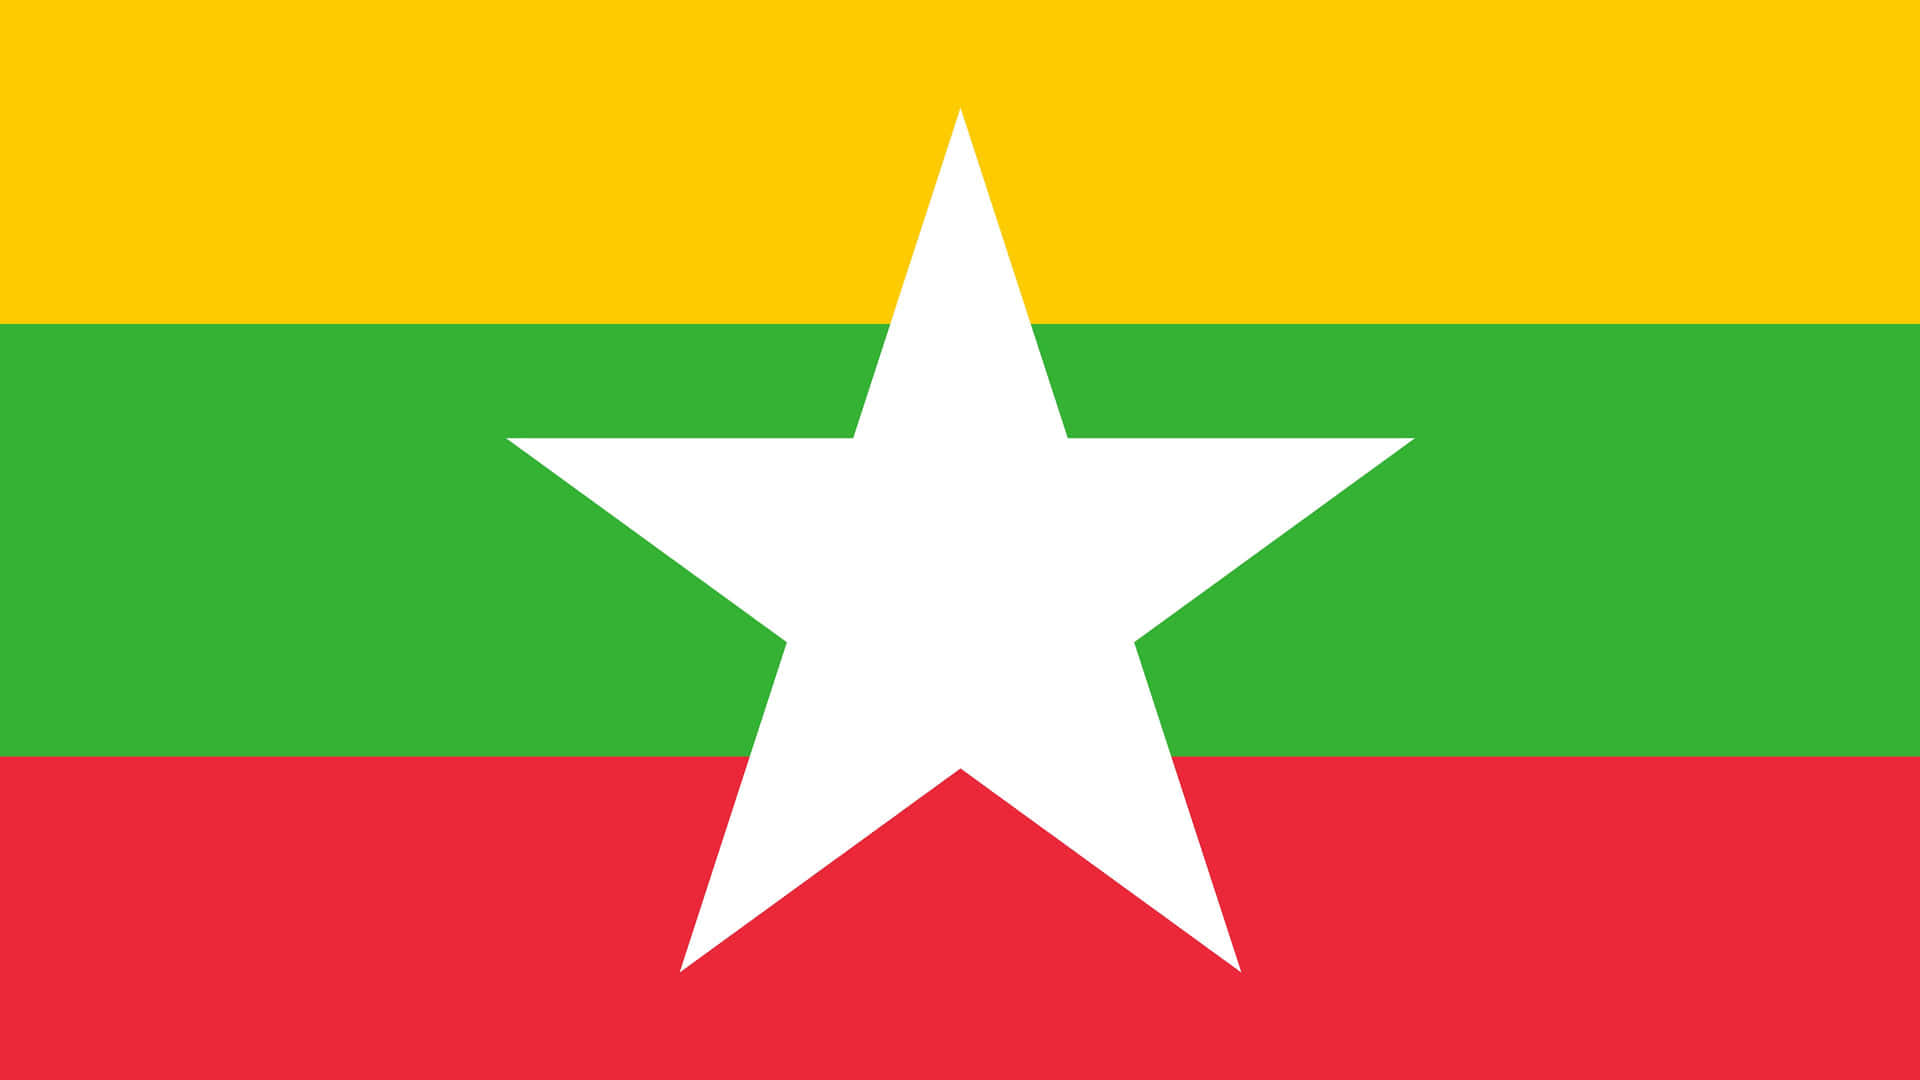 Banderade Myanmar Con Estrella